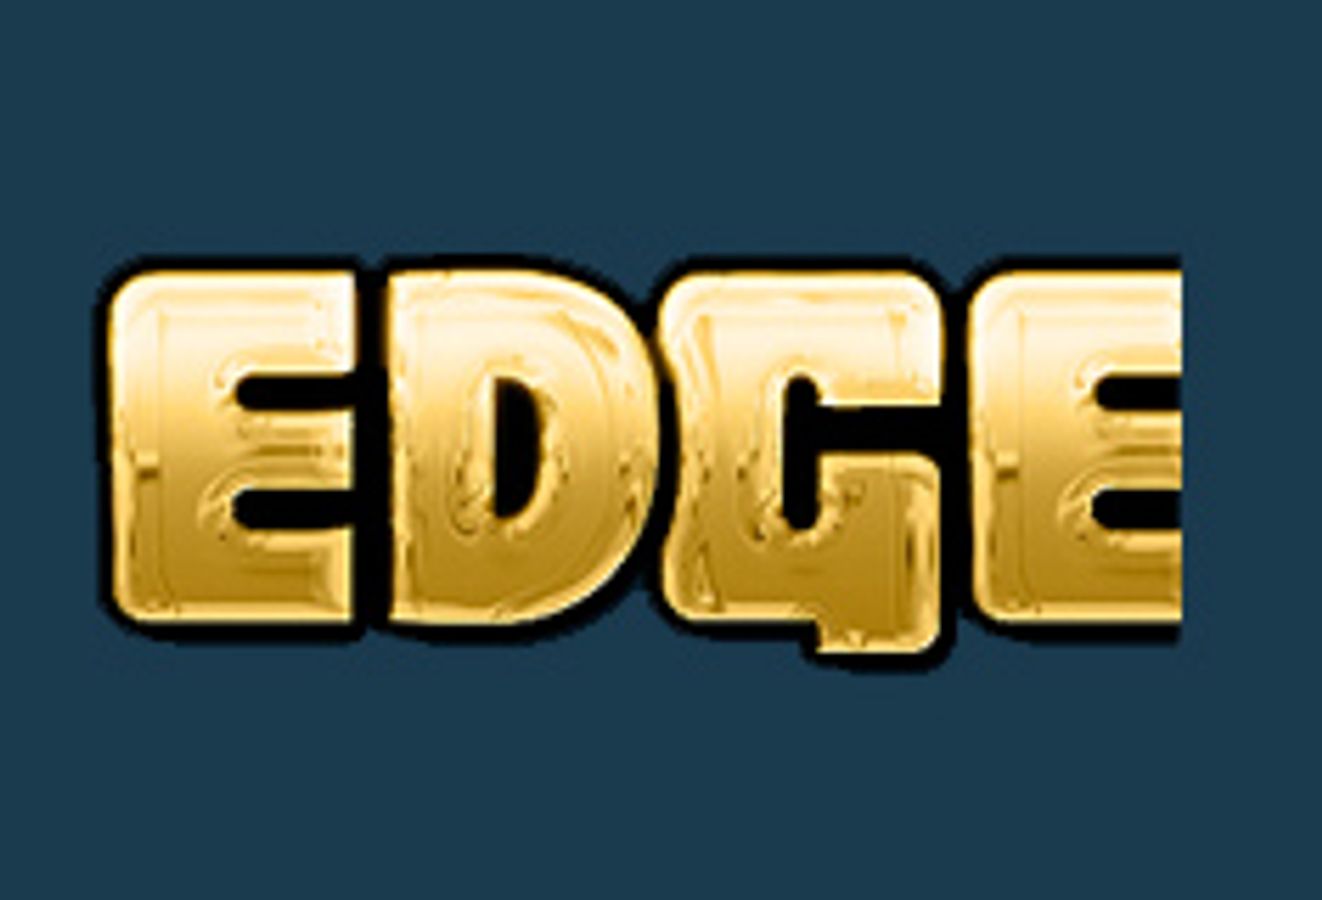 EdgeXD.com